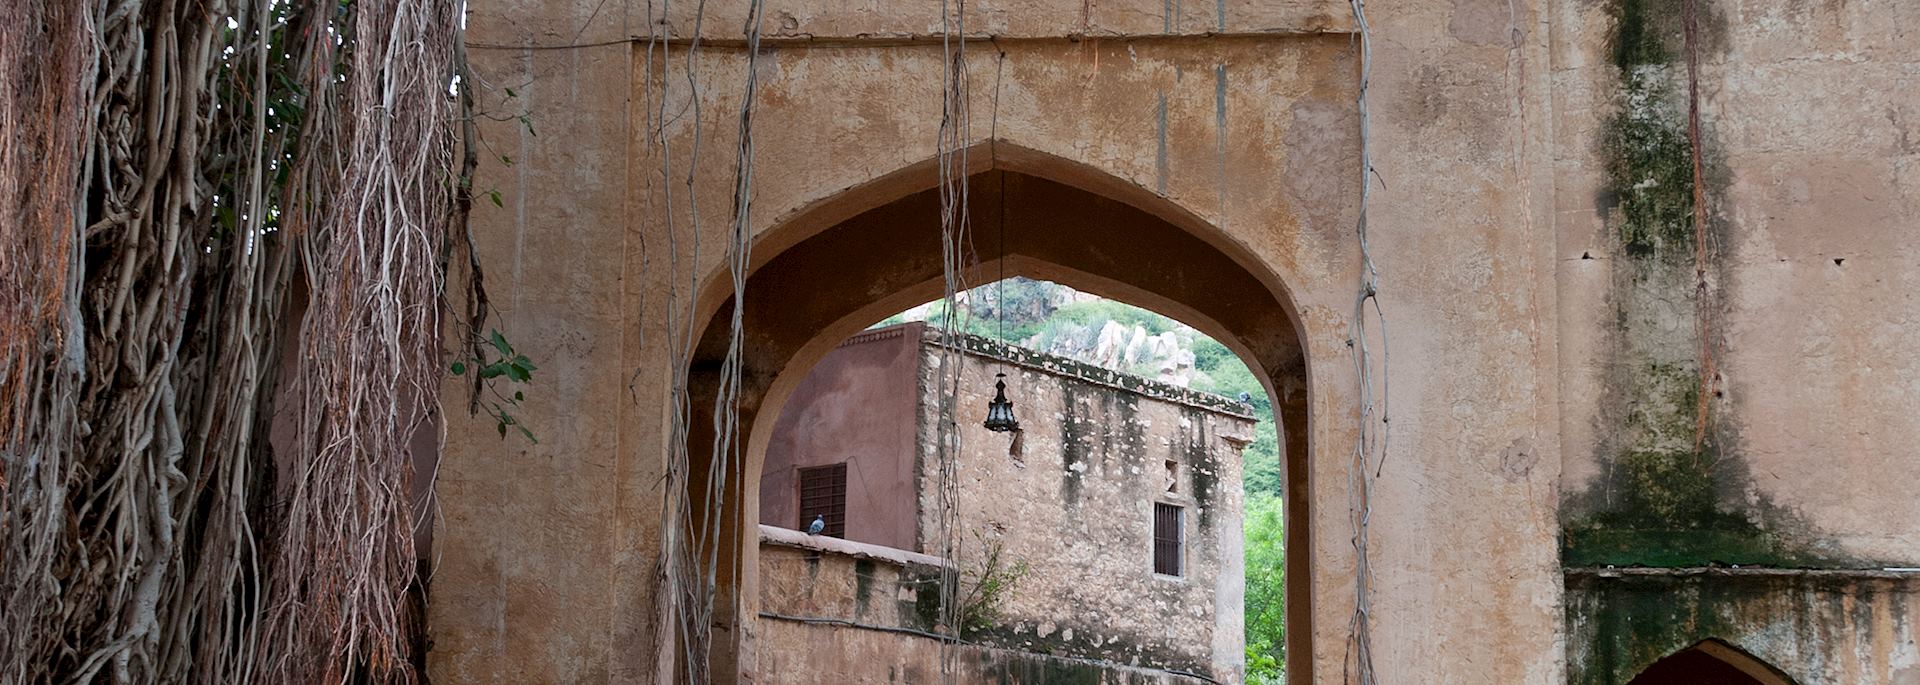 Entrance to Samode Palace